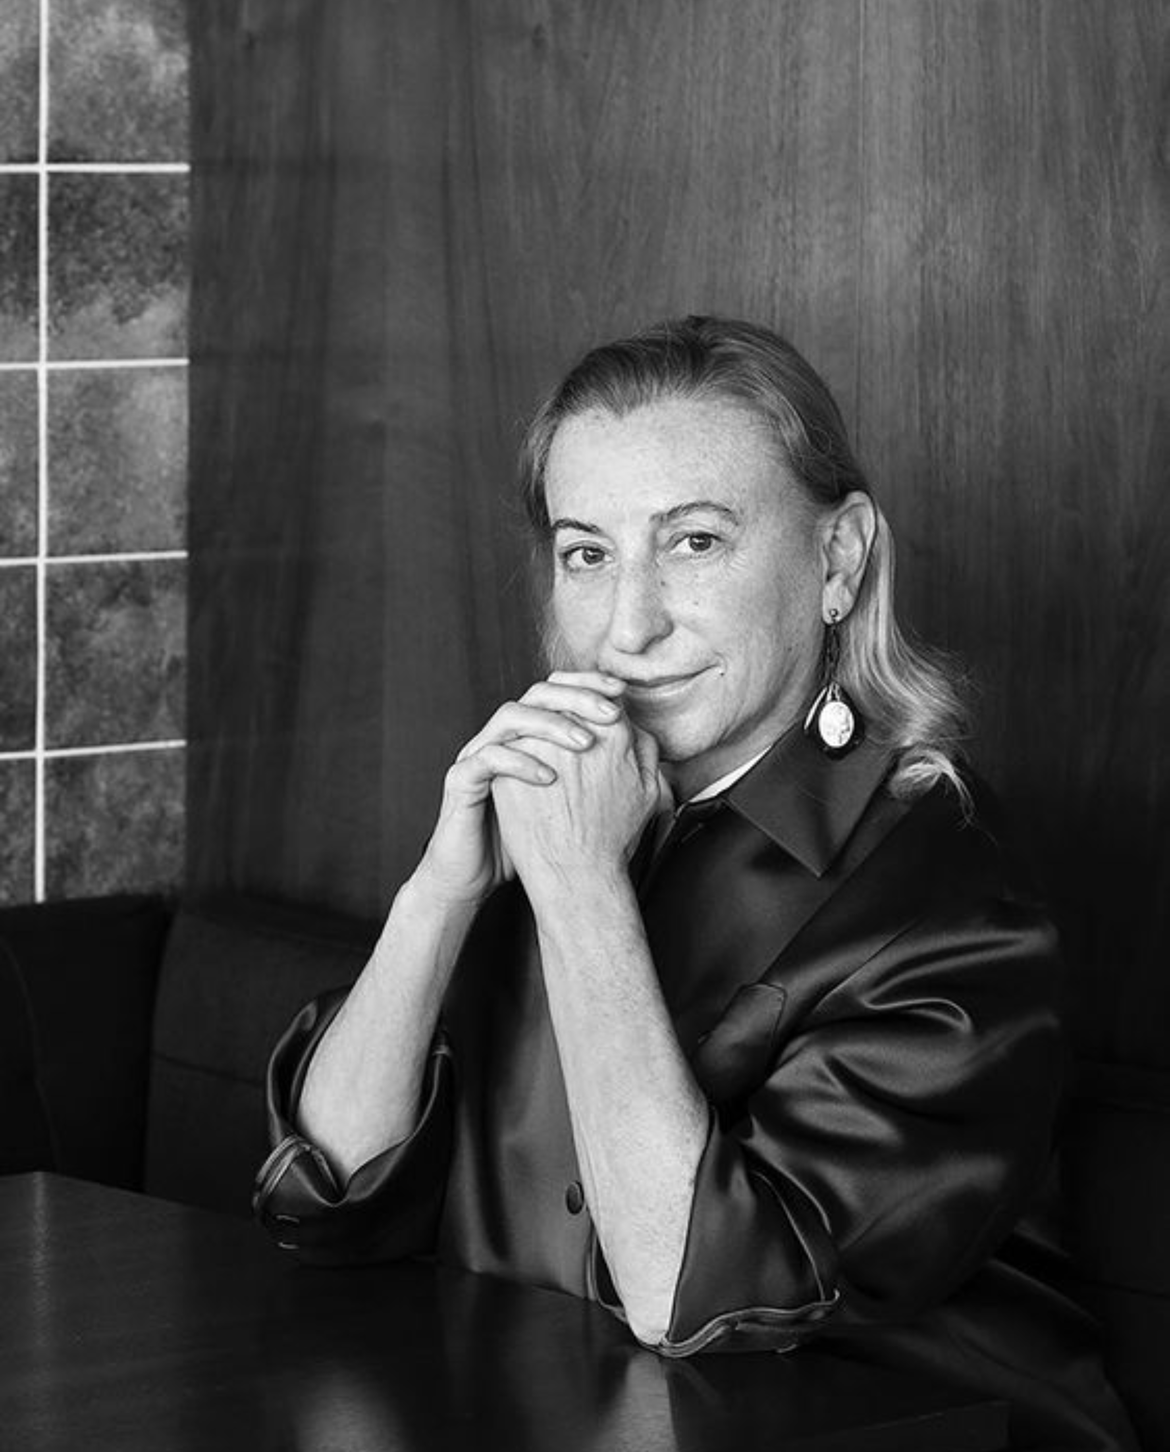 Miuccia Prada - An Intellectual Force in Fashion